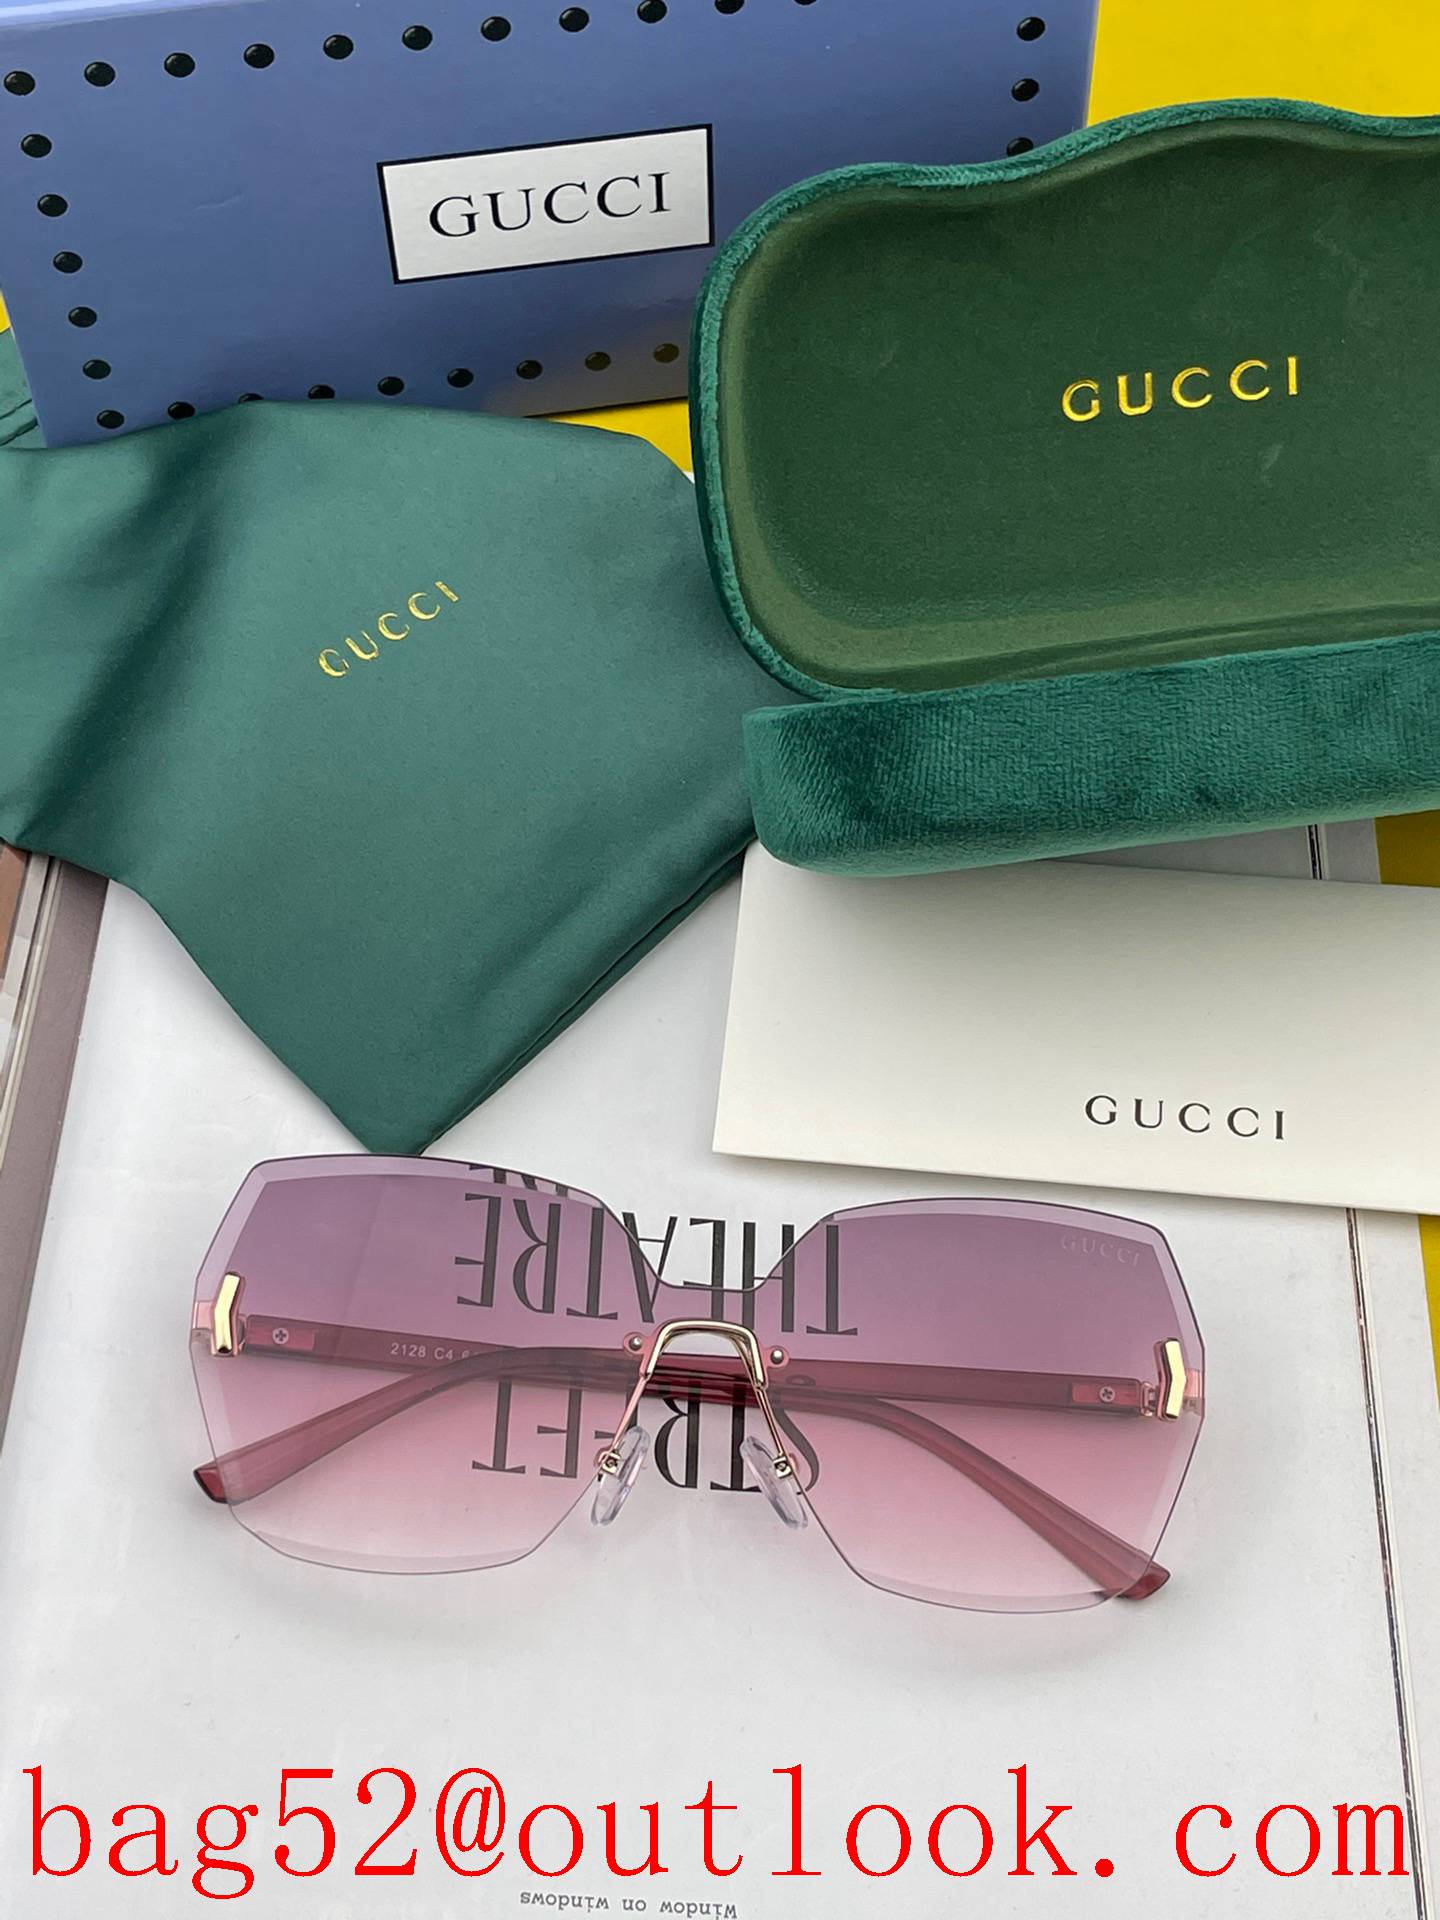 GUCCI's new one-piece nylon polarized sunglasses